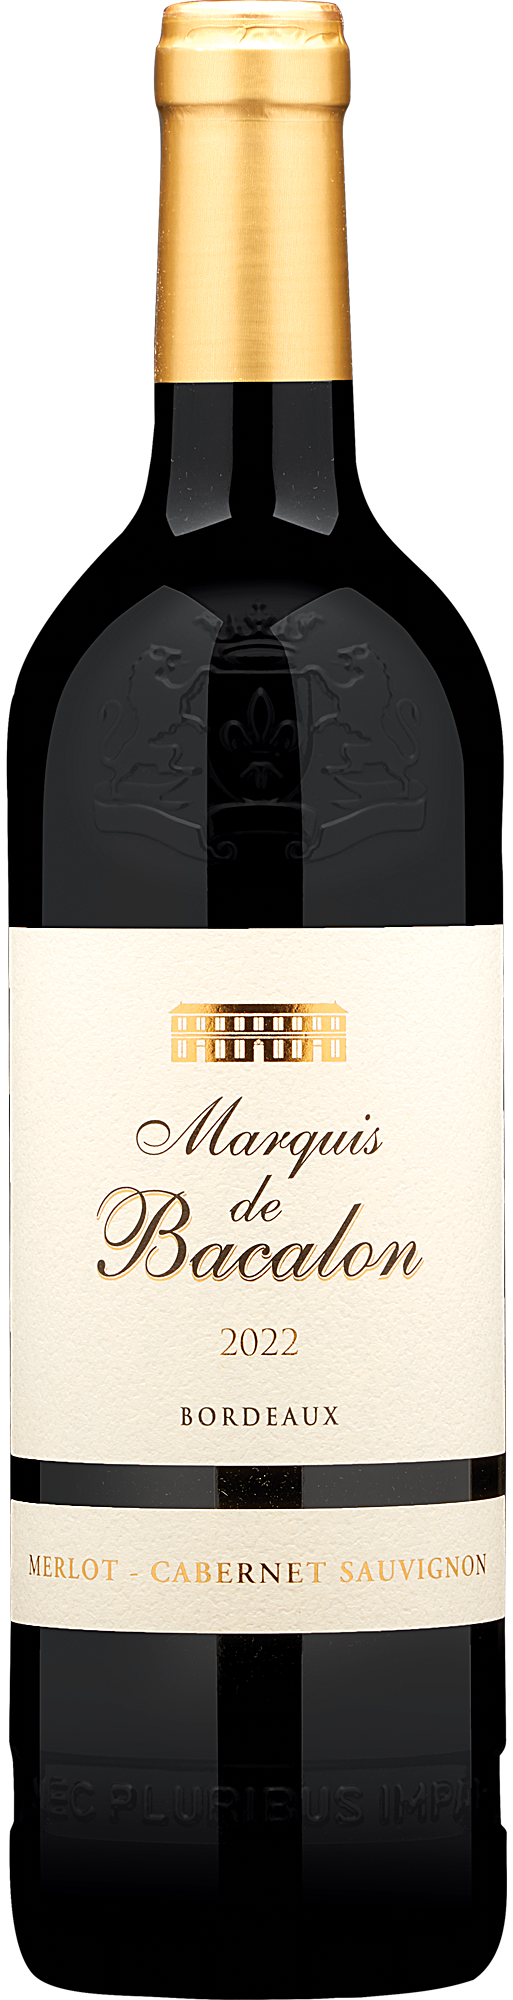 2022 Marquis de Bacalon Bordeaux Rouge